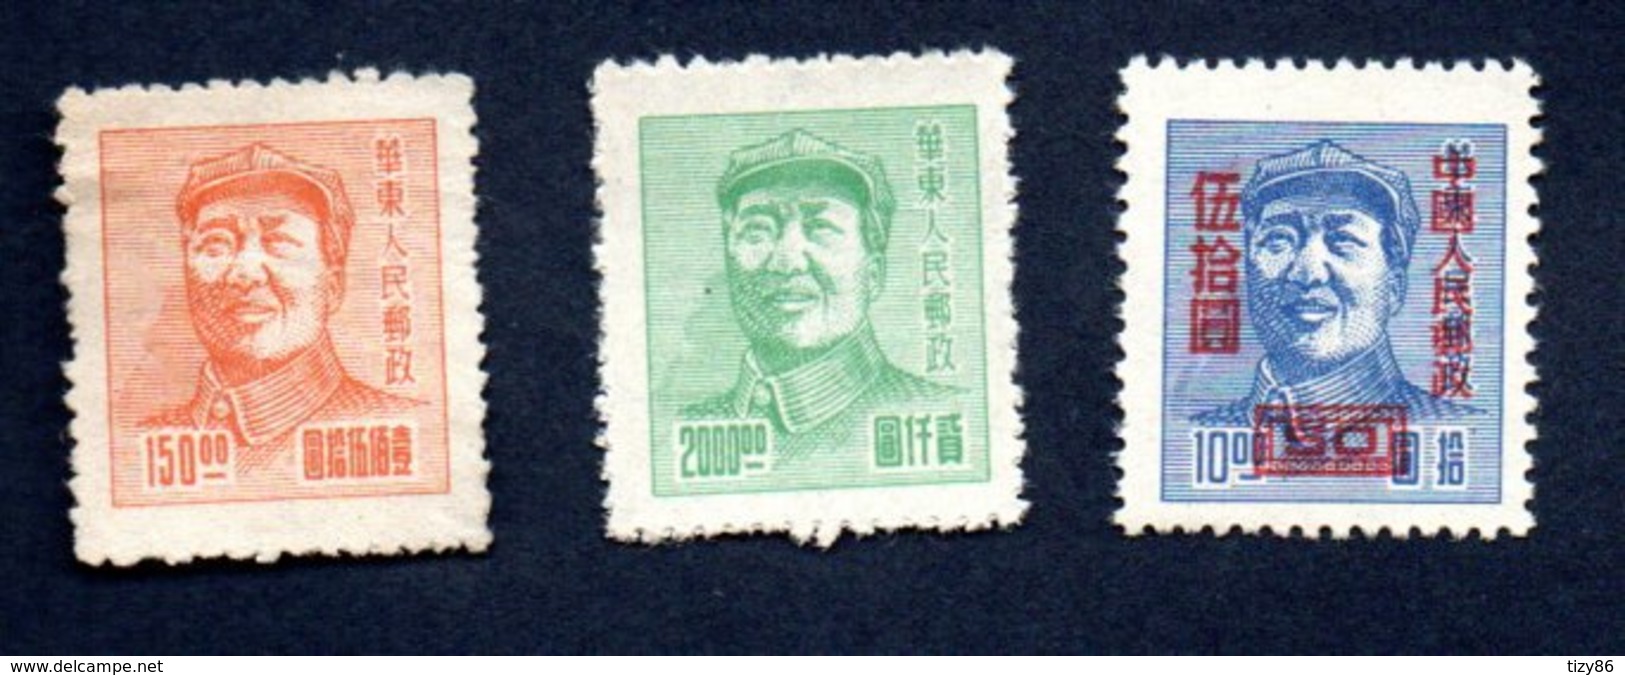 Francobolli Cina 1950 - 3 Valori (nuovi) - Nuovi